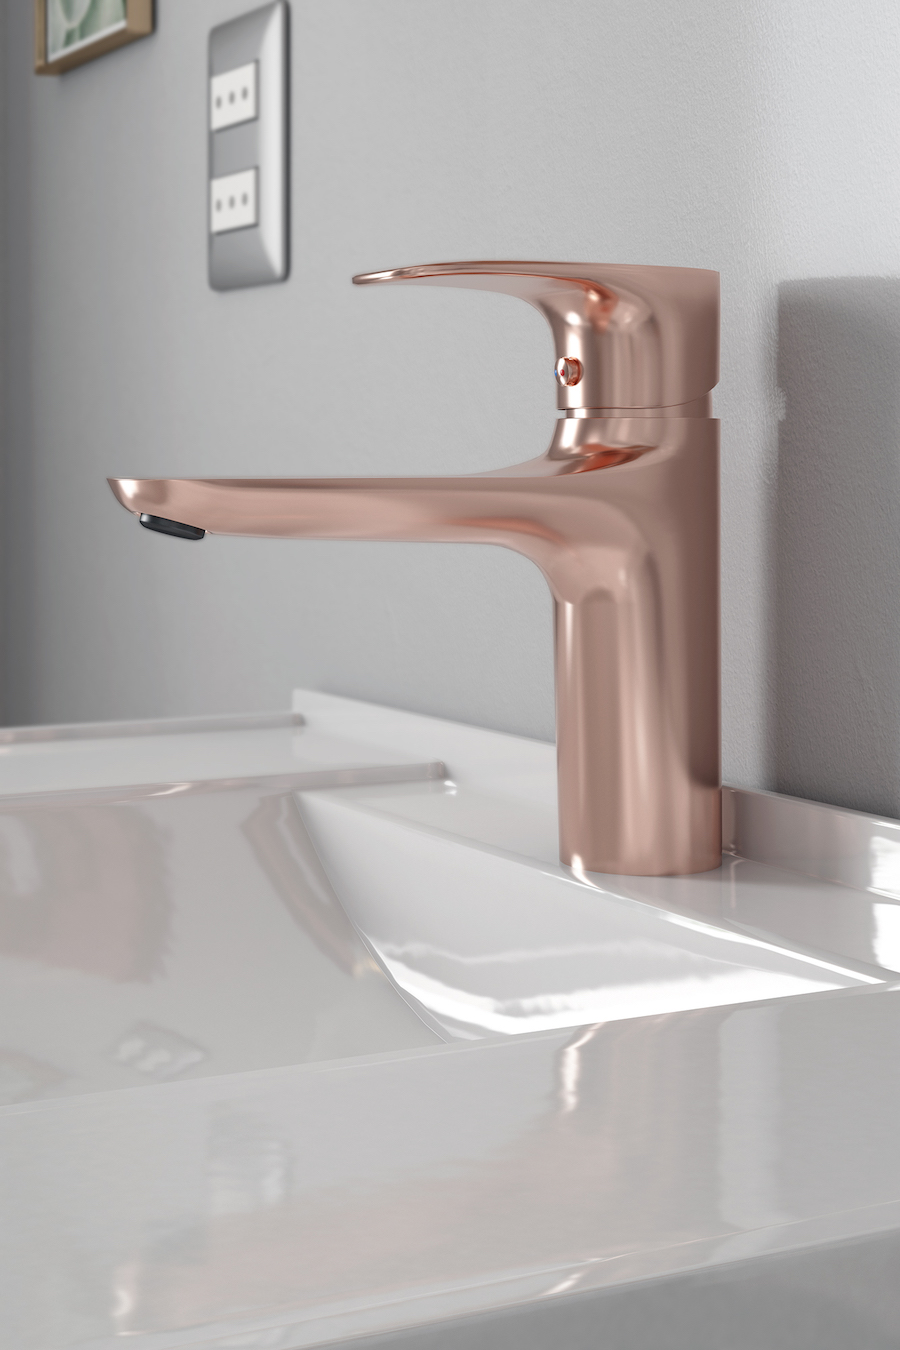 Detalle de un lavamanos de baño con grifería en color cobre.